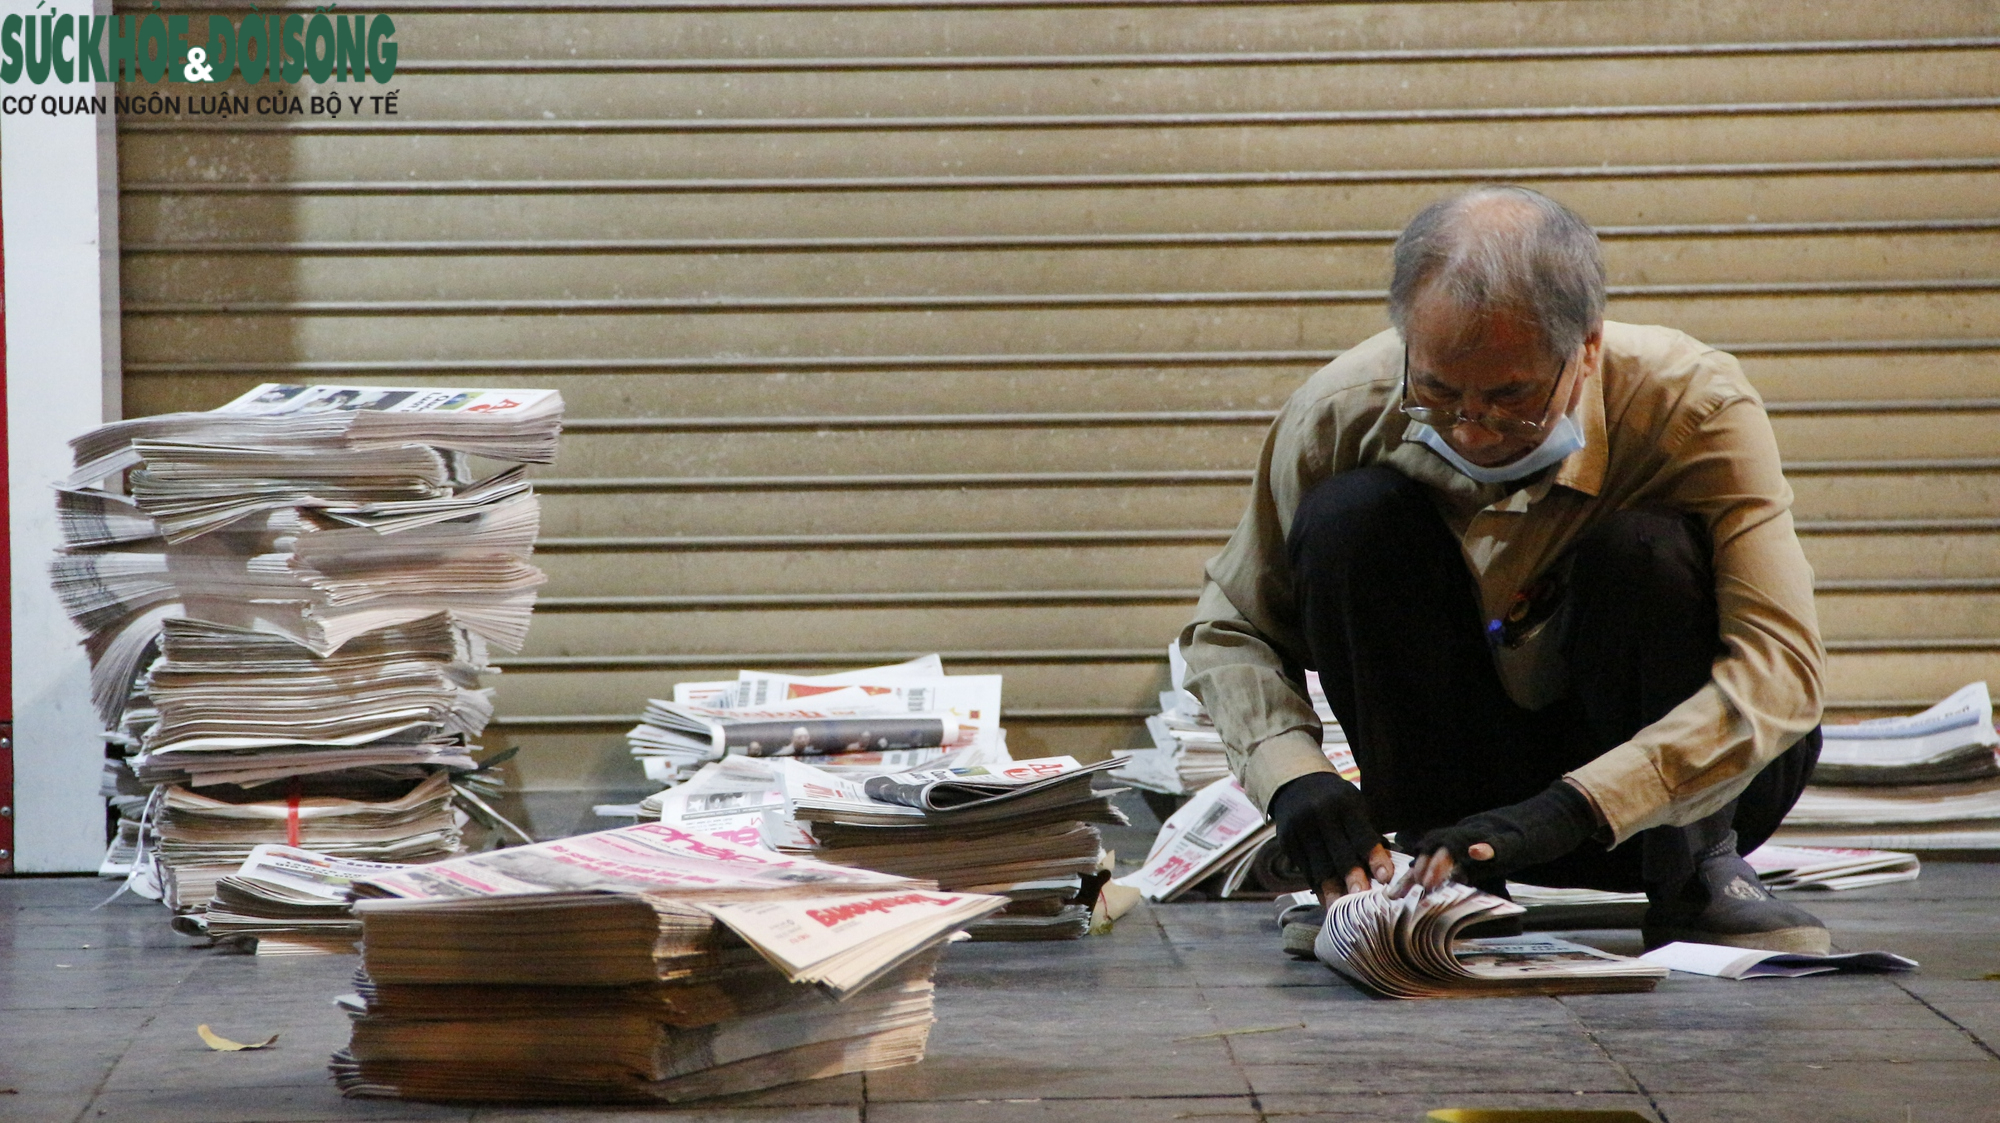 &quot;Ngắm nghía&quot; những sạp báo giấy, nơi lưu giữ văn hóa Hà Nội xưa - Ảnh 20.